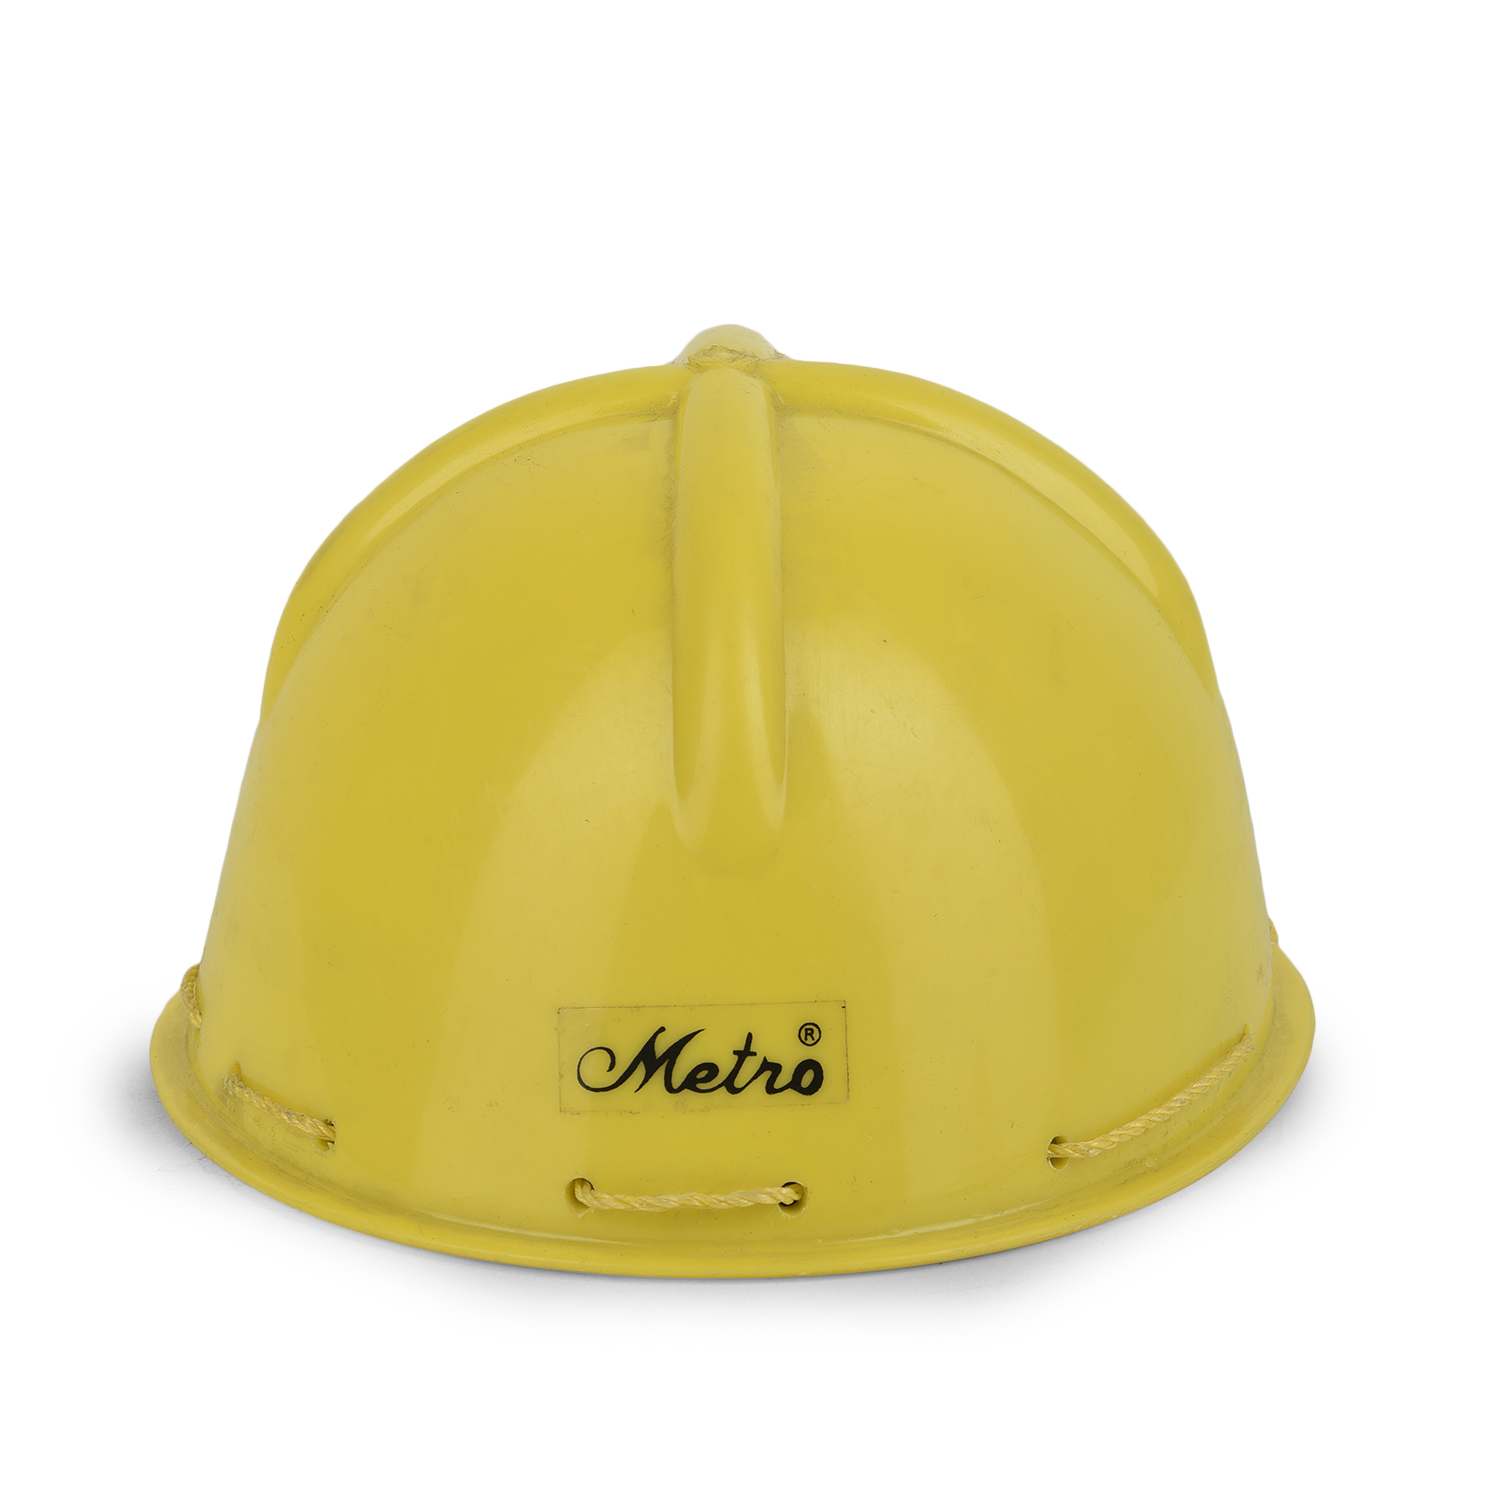 mine safety helmet